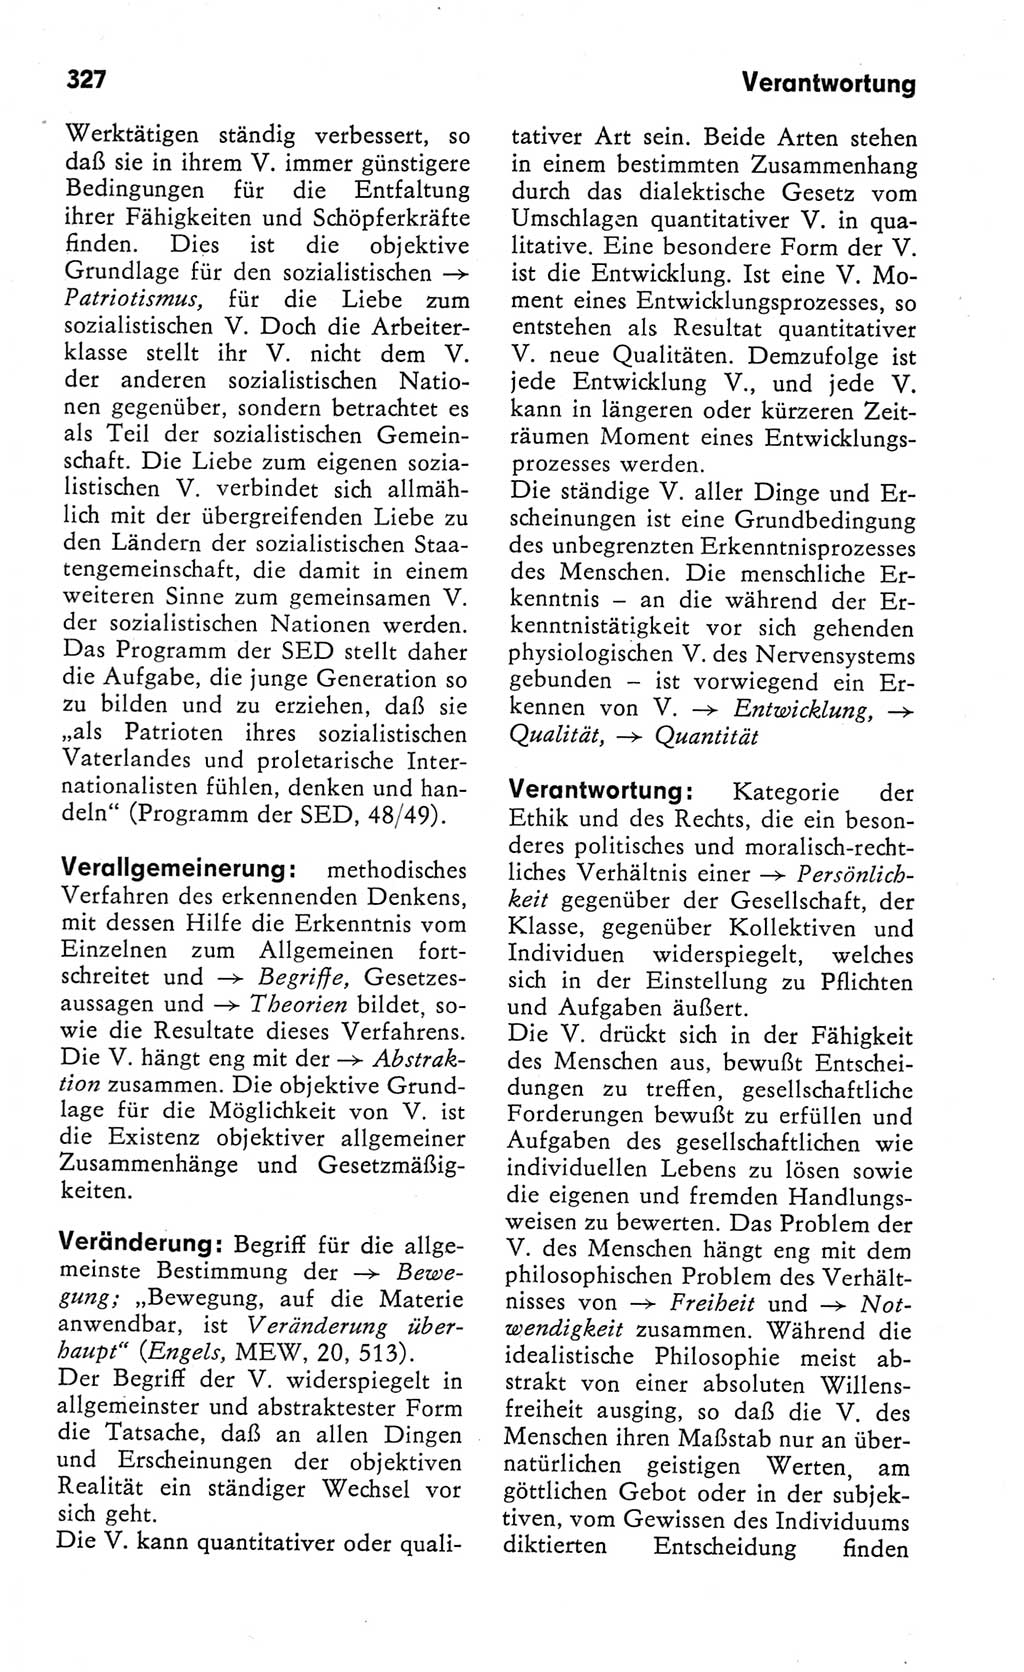 Kleines Wörterbuch der marxistisch-leninistischen Philosophie [Deutsche Demokratische Republik (DDR)] 1982, Seite 327 (Kl. Wb. ML Phil. DDR 1982, S. 327)